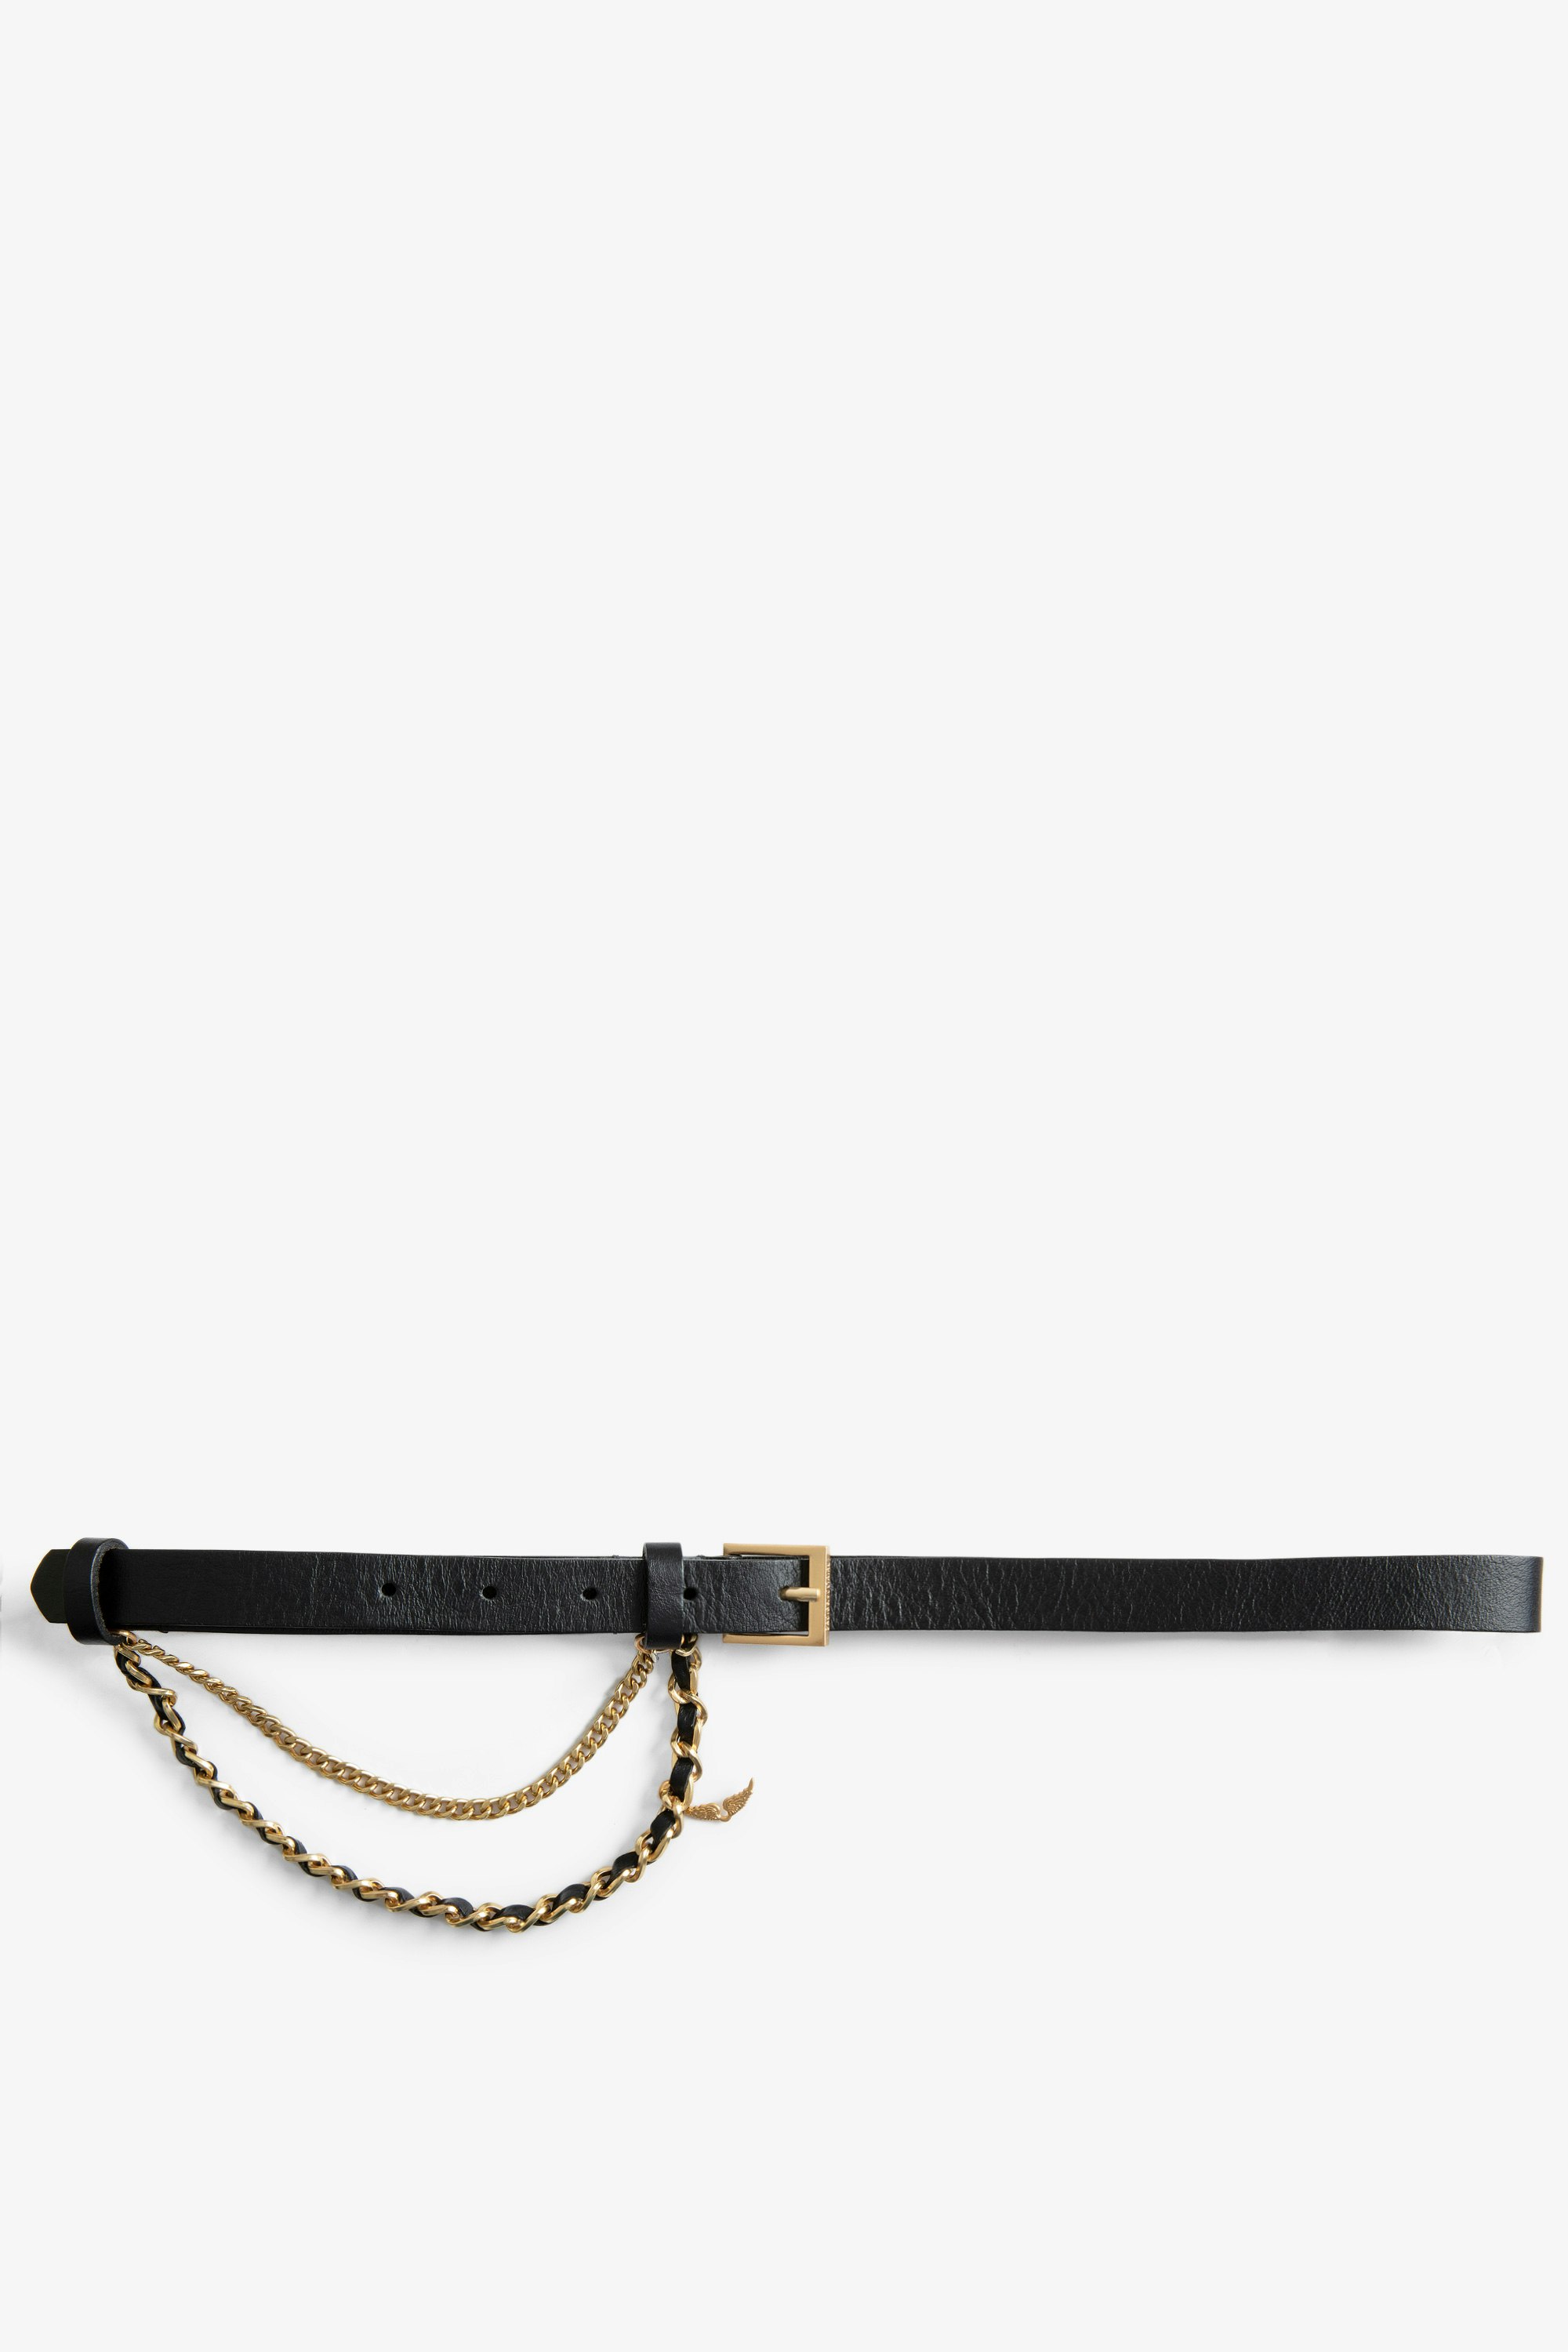 Cintura Rock Chain Cintura in pelle nera da donna Zadig&Voltaire con catena.